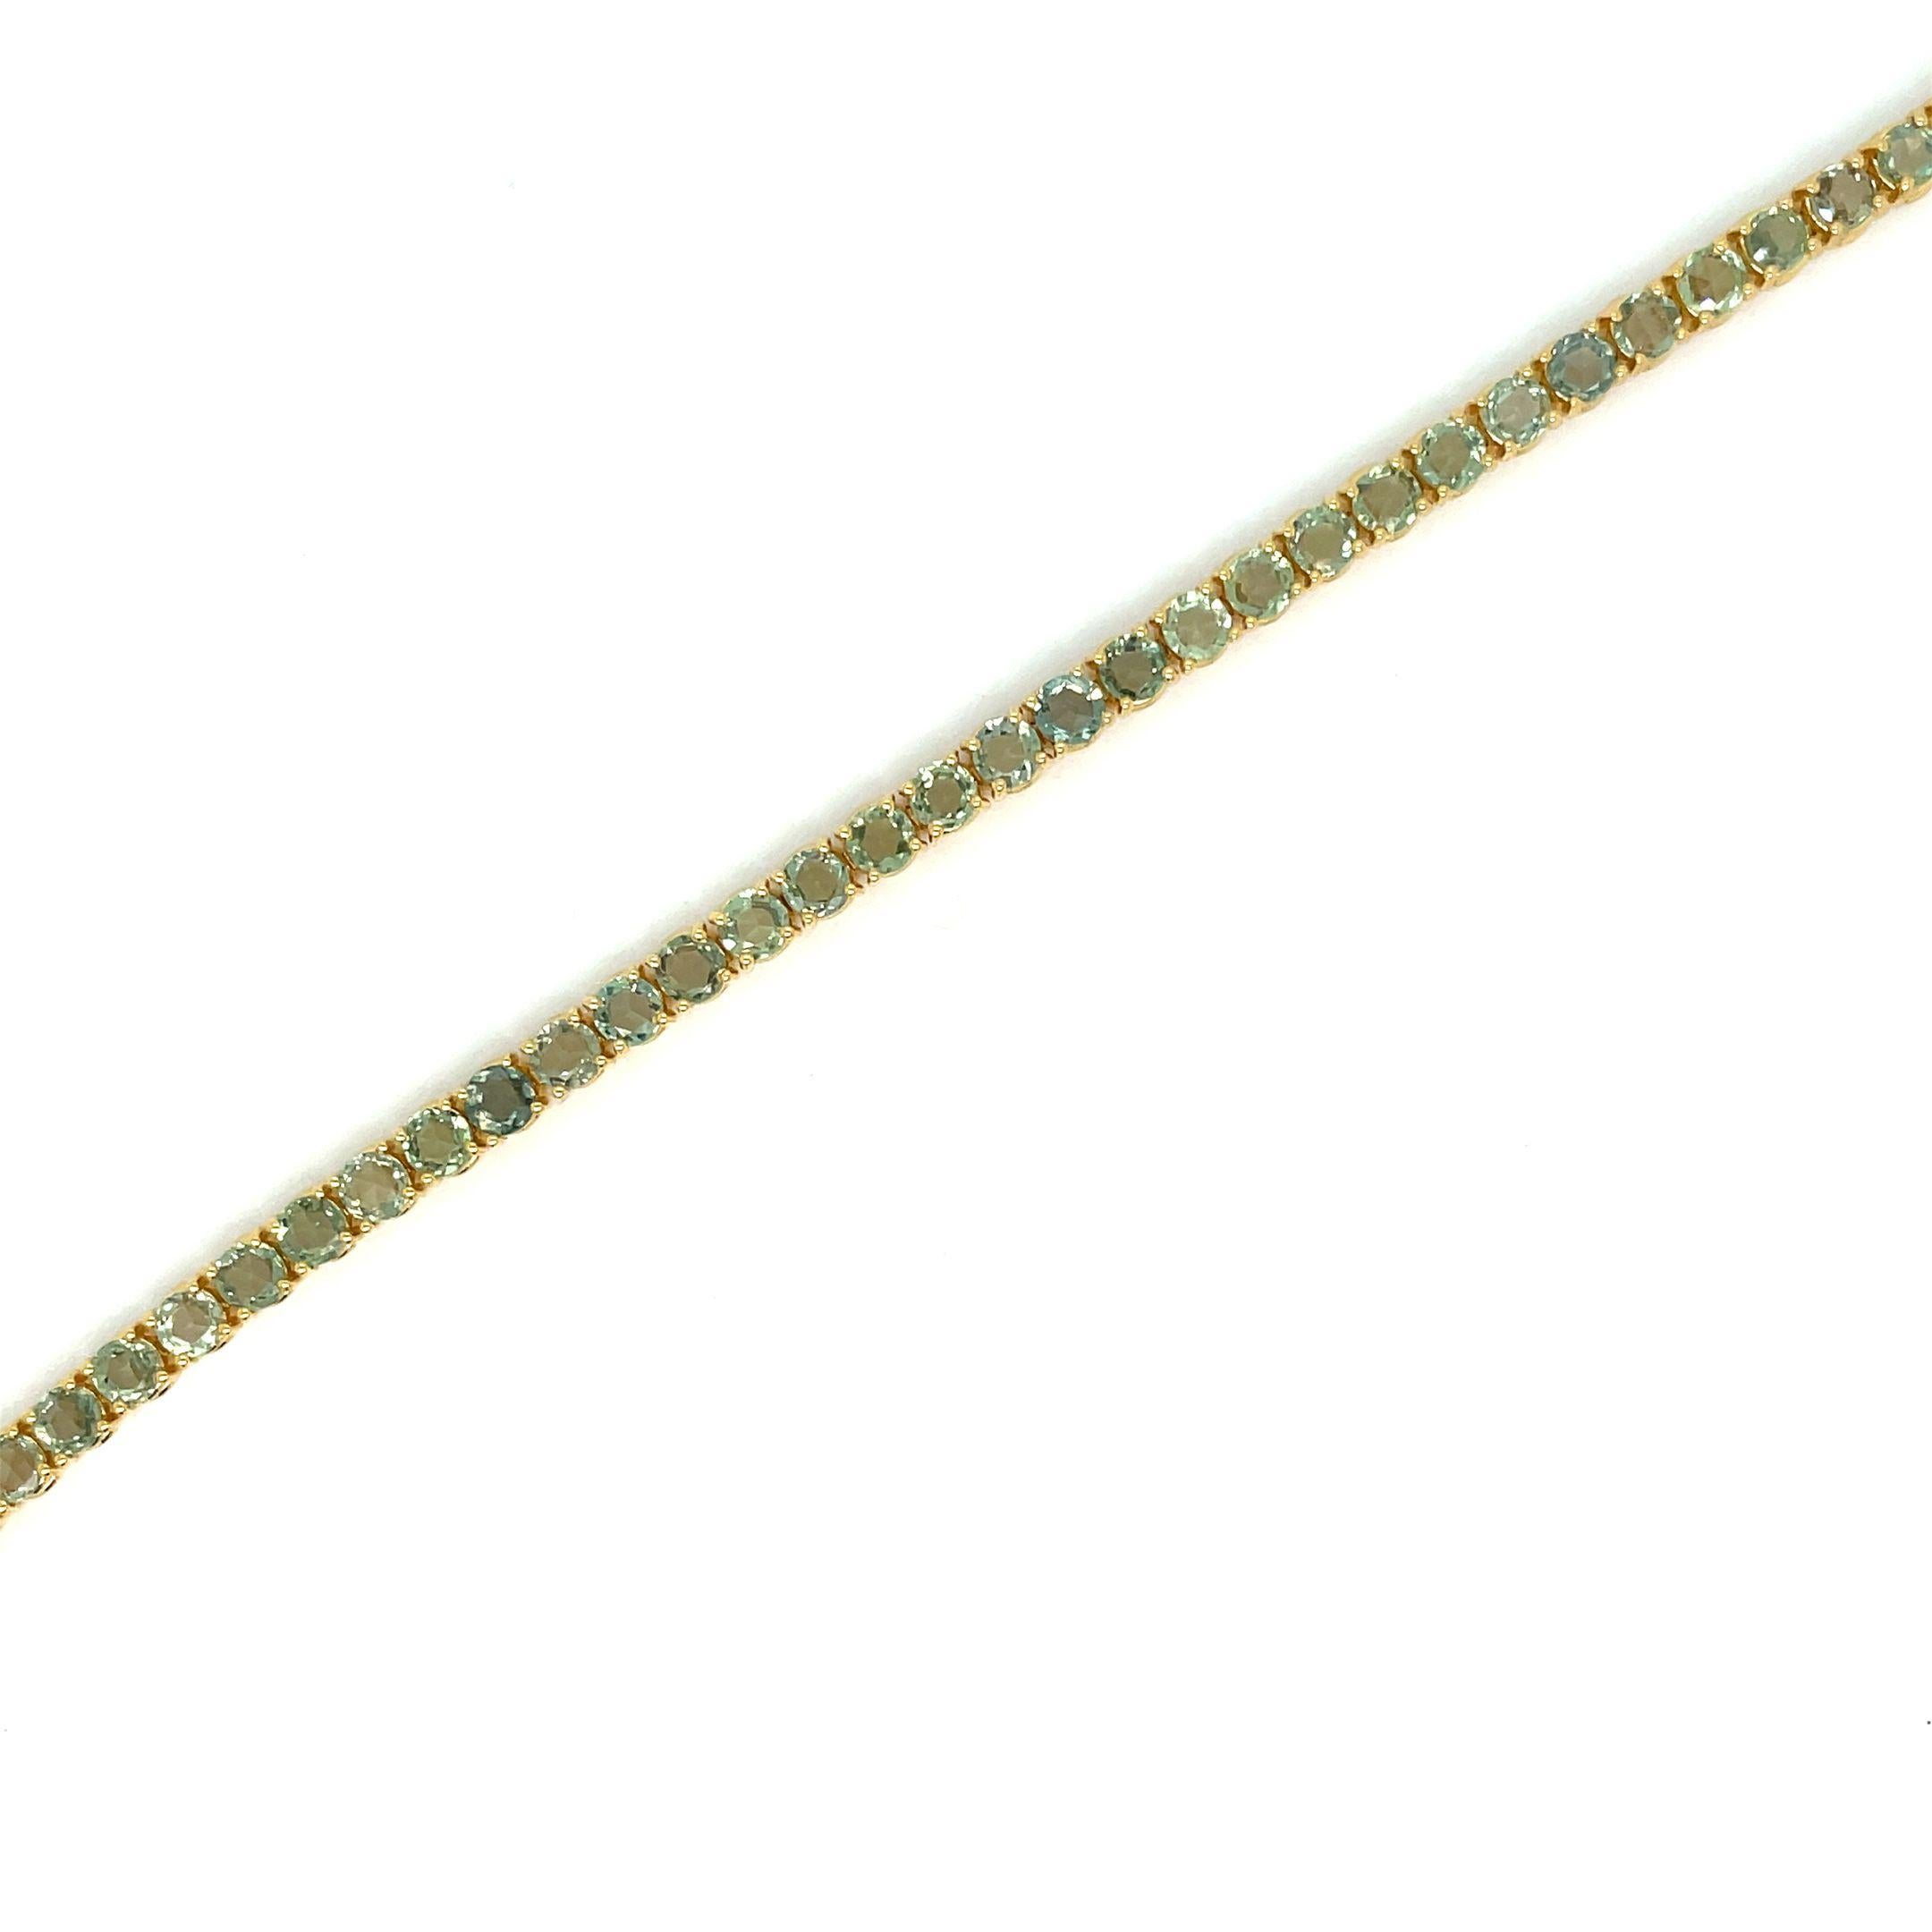 Fabelhaftes, brandneues Armband aus massivem 9-karätigem Gelbgold, besetzt mit 9,80 Karat grünen Saphiren mit Rosenschliff und einem Gewicht von je 0,21 Karat (3,5 mm).
Dieses Stück wird in unseren Labors entworfen und hergestellt, dank alter